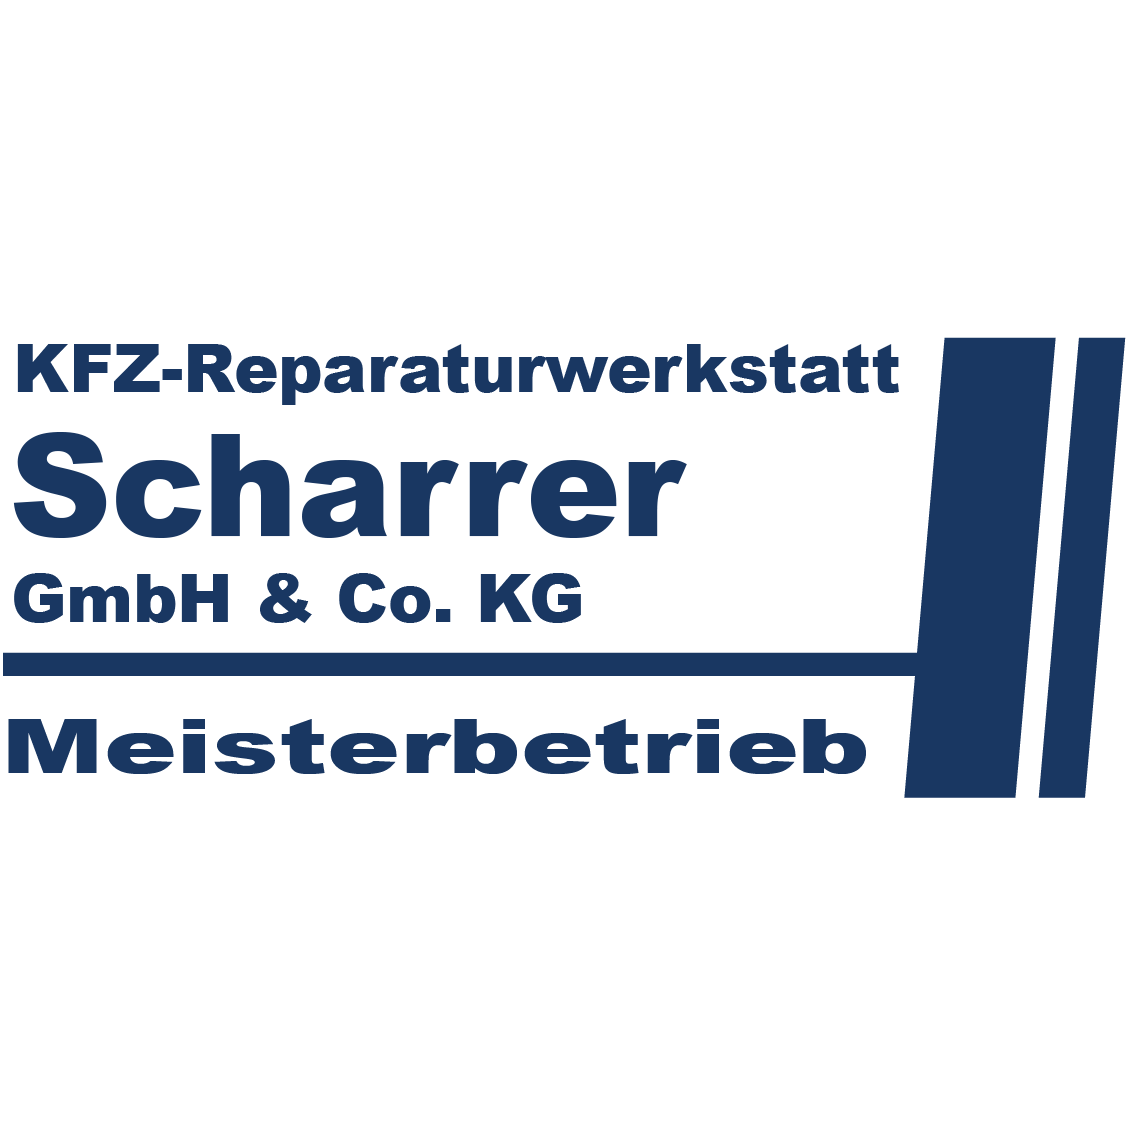 Kfz-Reparaturwerkstatt Scharrer GmbH & Co. KG Logo